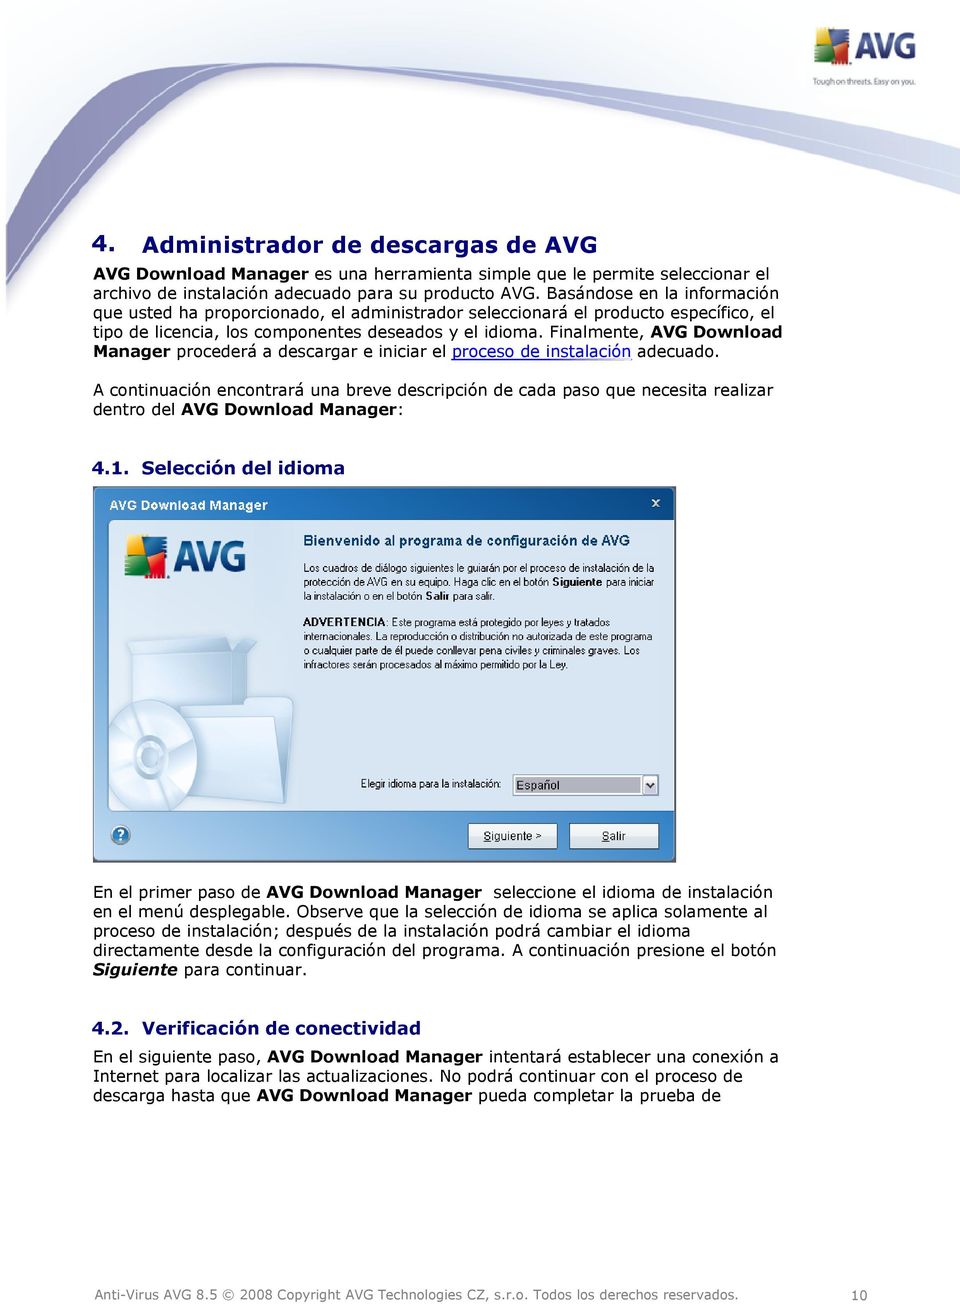 Finalmente, AVG Download Manager procederá a descargar e iniciar el proceso de instalación adecuado.